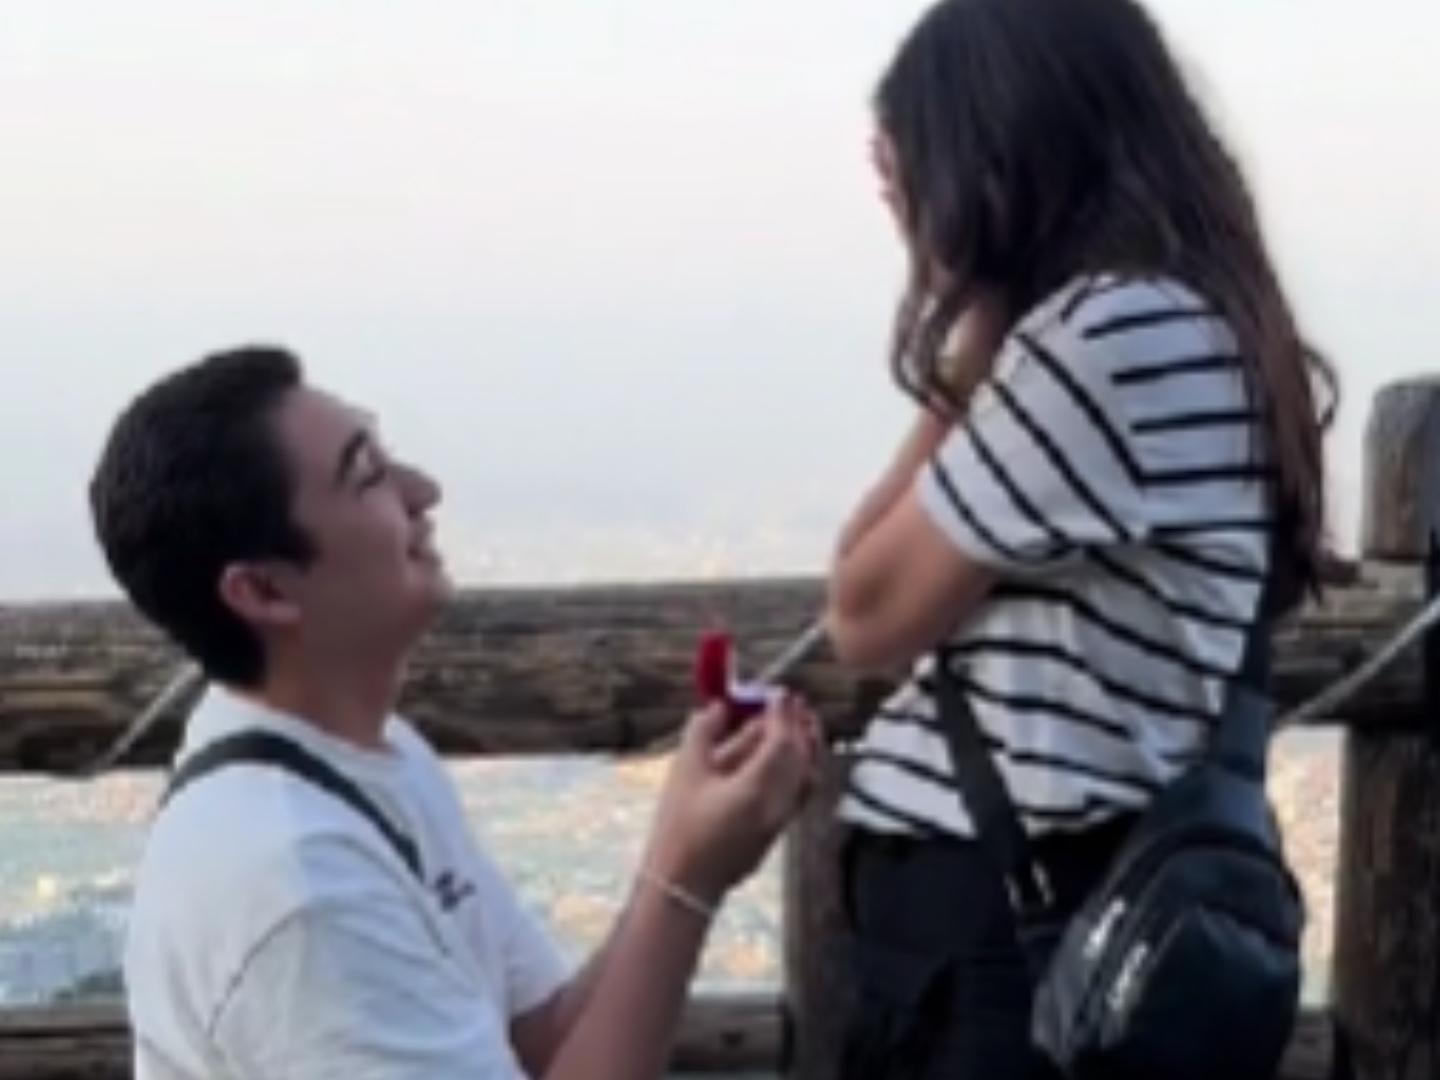 Video | ¿Señales? Petición de Matrimonio en un Barranco No Termina de lo Mejor 